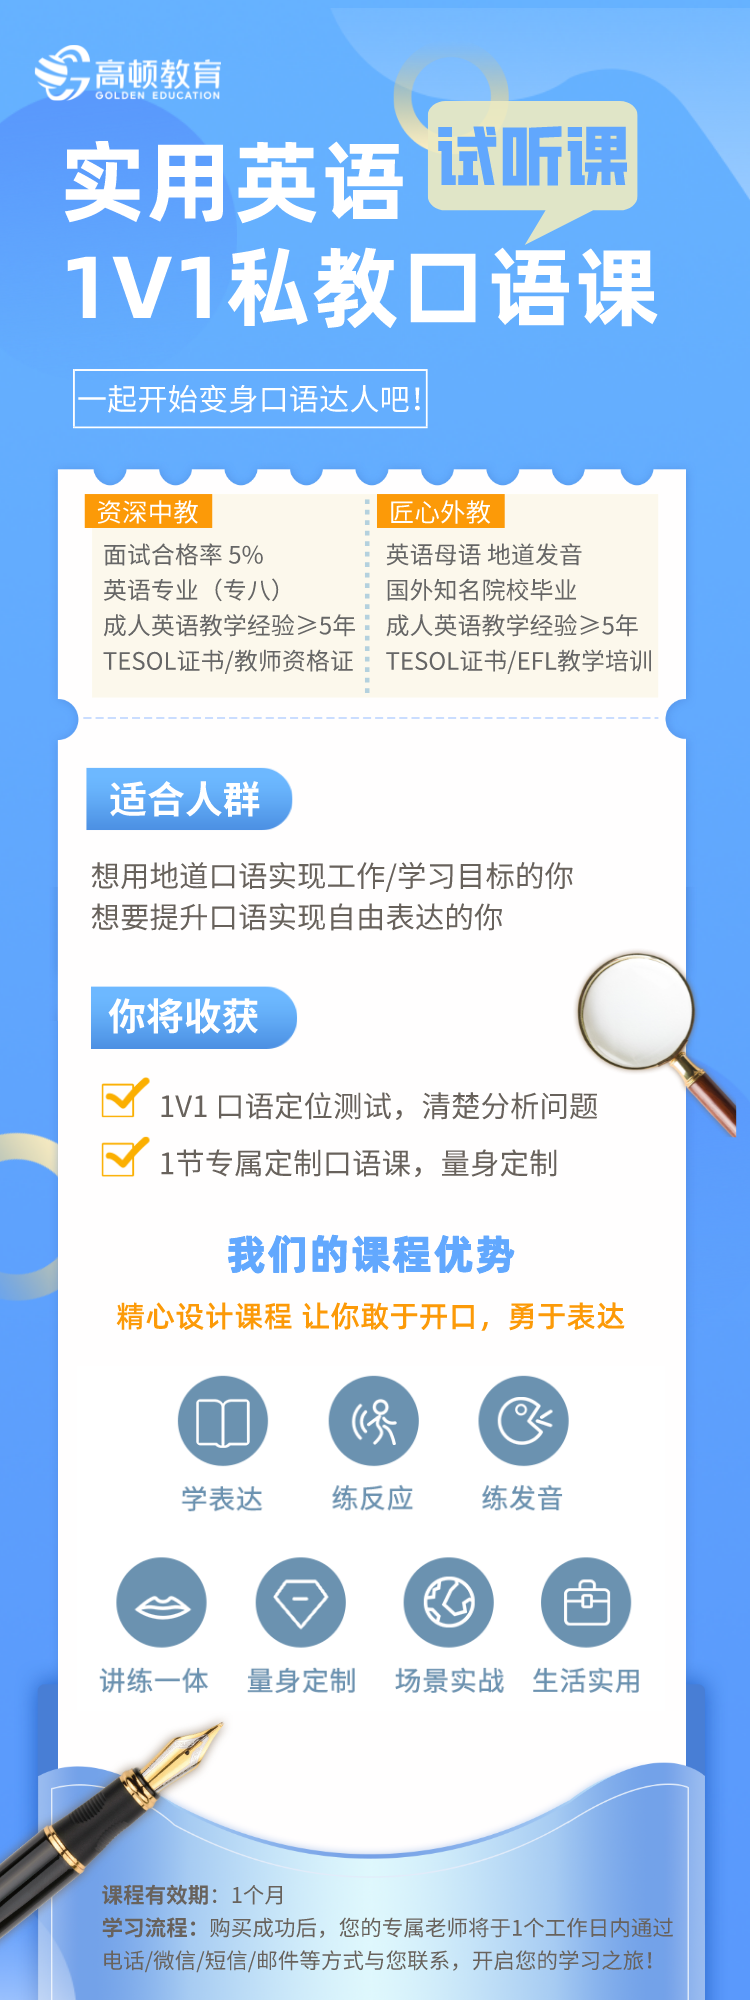 https://simg01.gaodunwangxiao.com/uploadfiles/product-center/202210/10/cc394_20221010145538.png